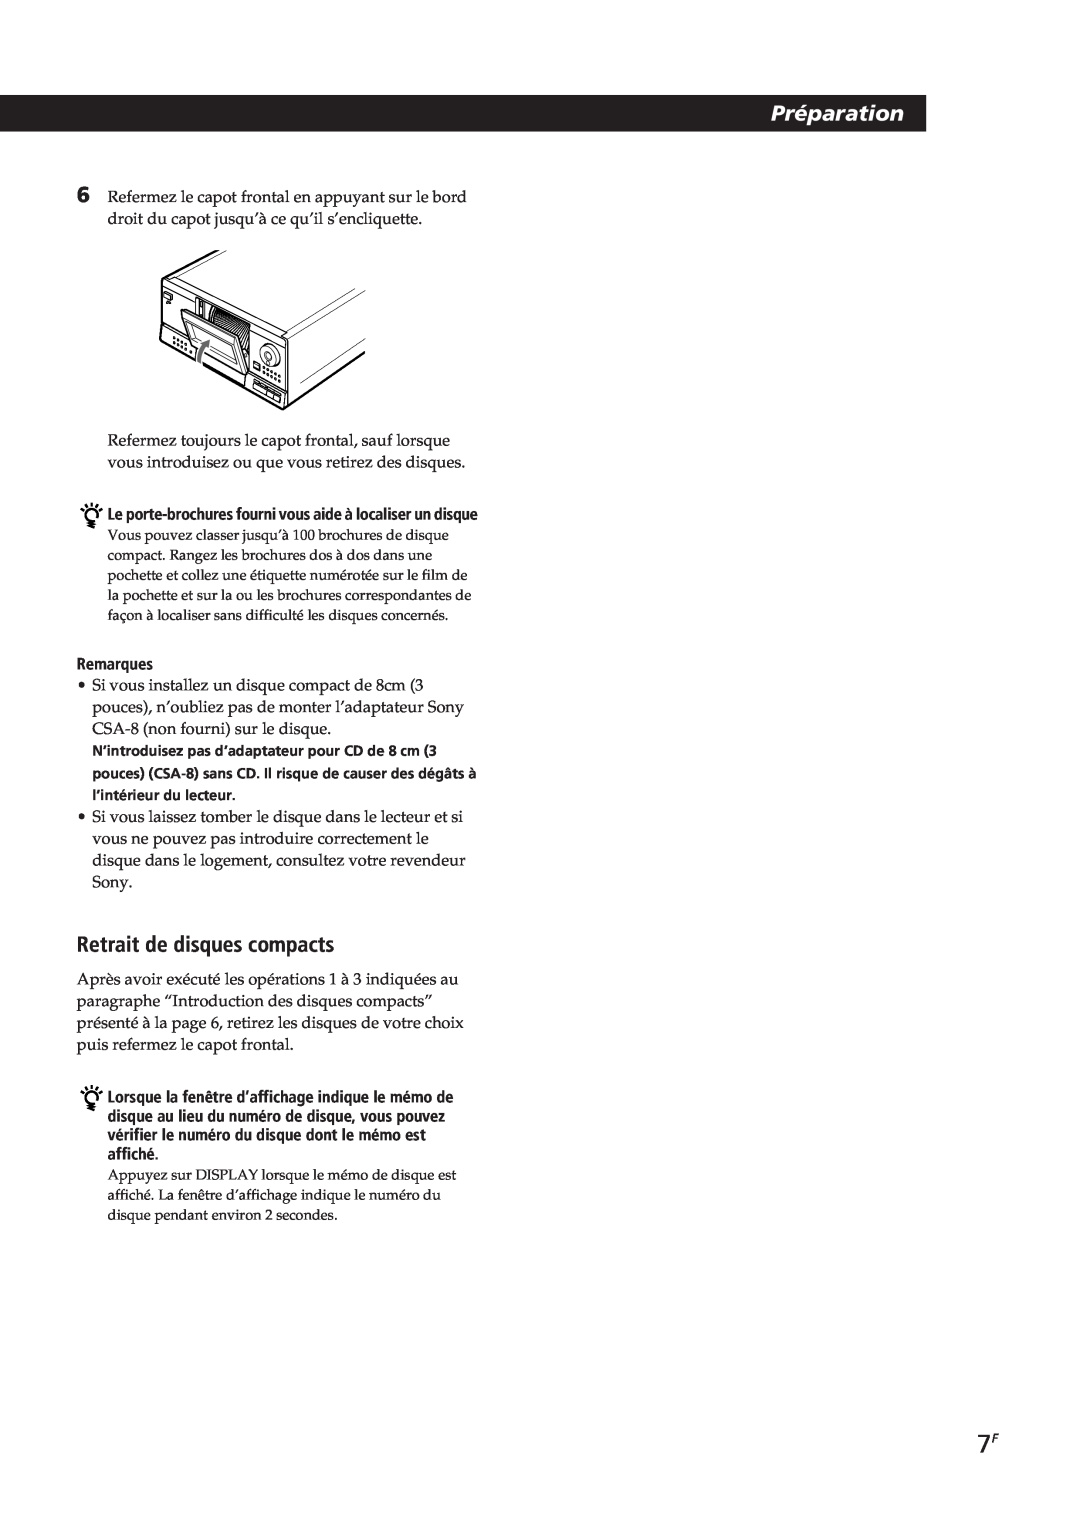 Sony CDP-CX153 manual Préparation, Retrait de disques compacts, Remarques 